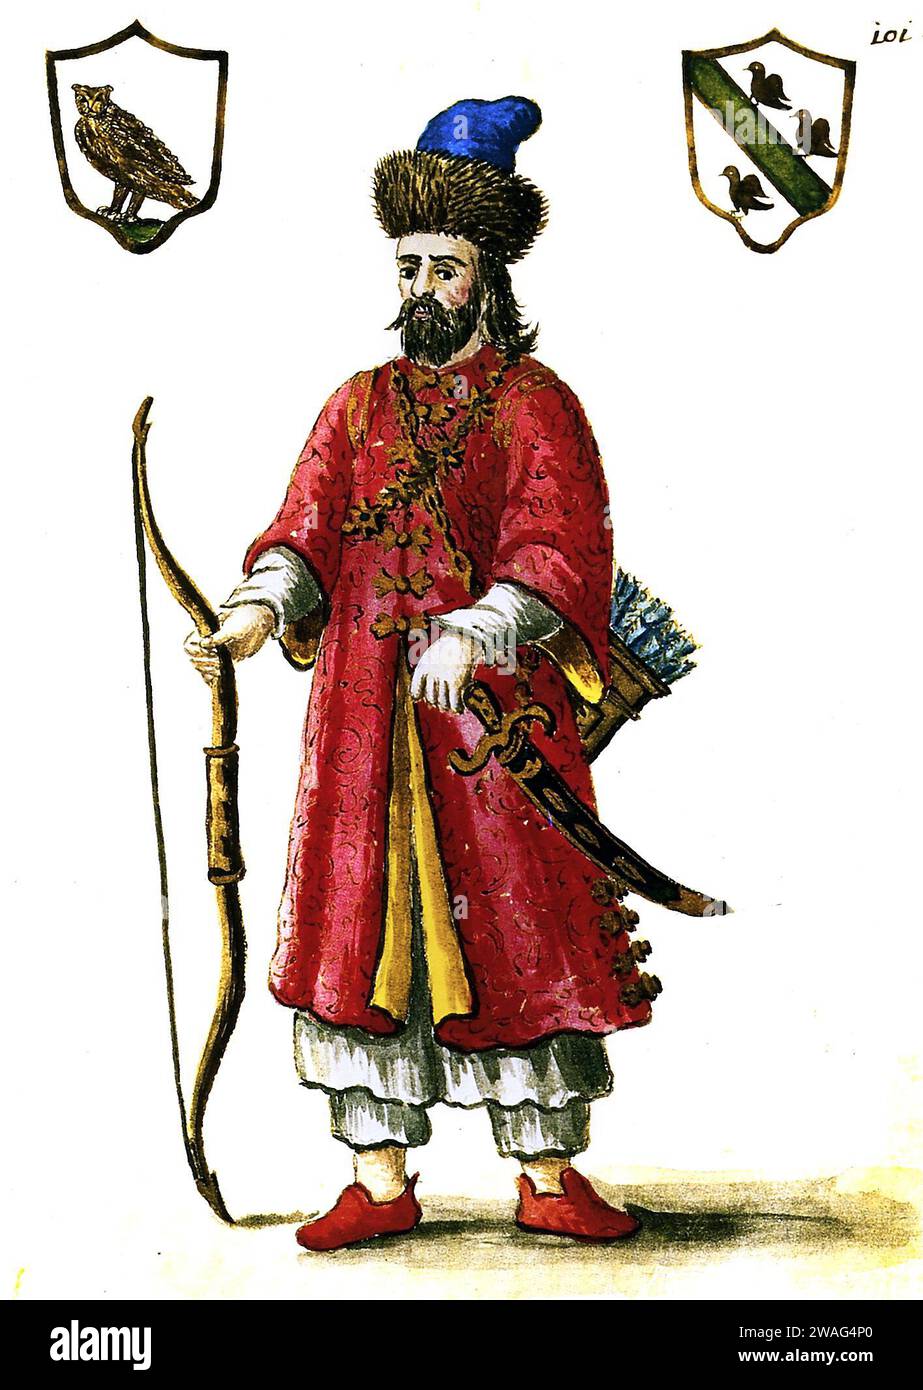 Marco Polo. Retrato del comerciante y explorador veneciano, Marco Polo (c. 1254-1324), ilustración del siglo XVIII en uniforme tártaro Foto de stock